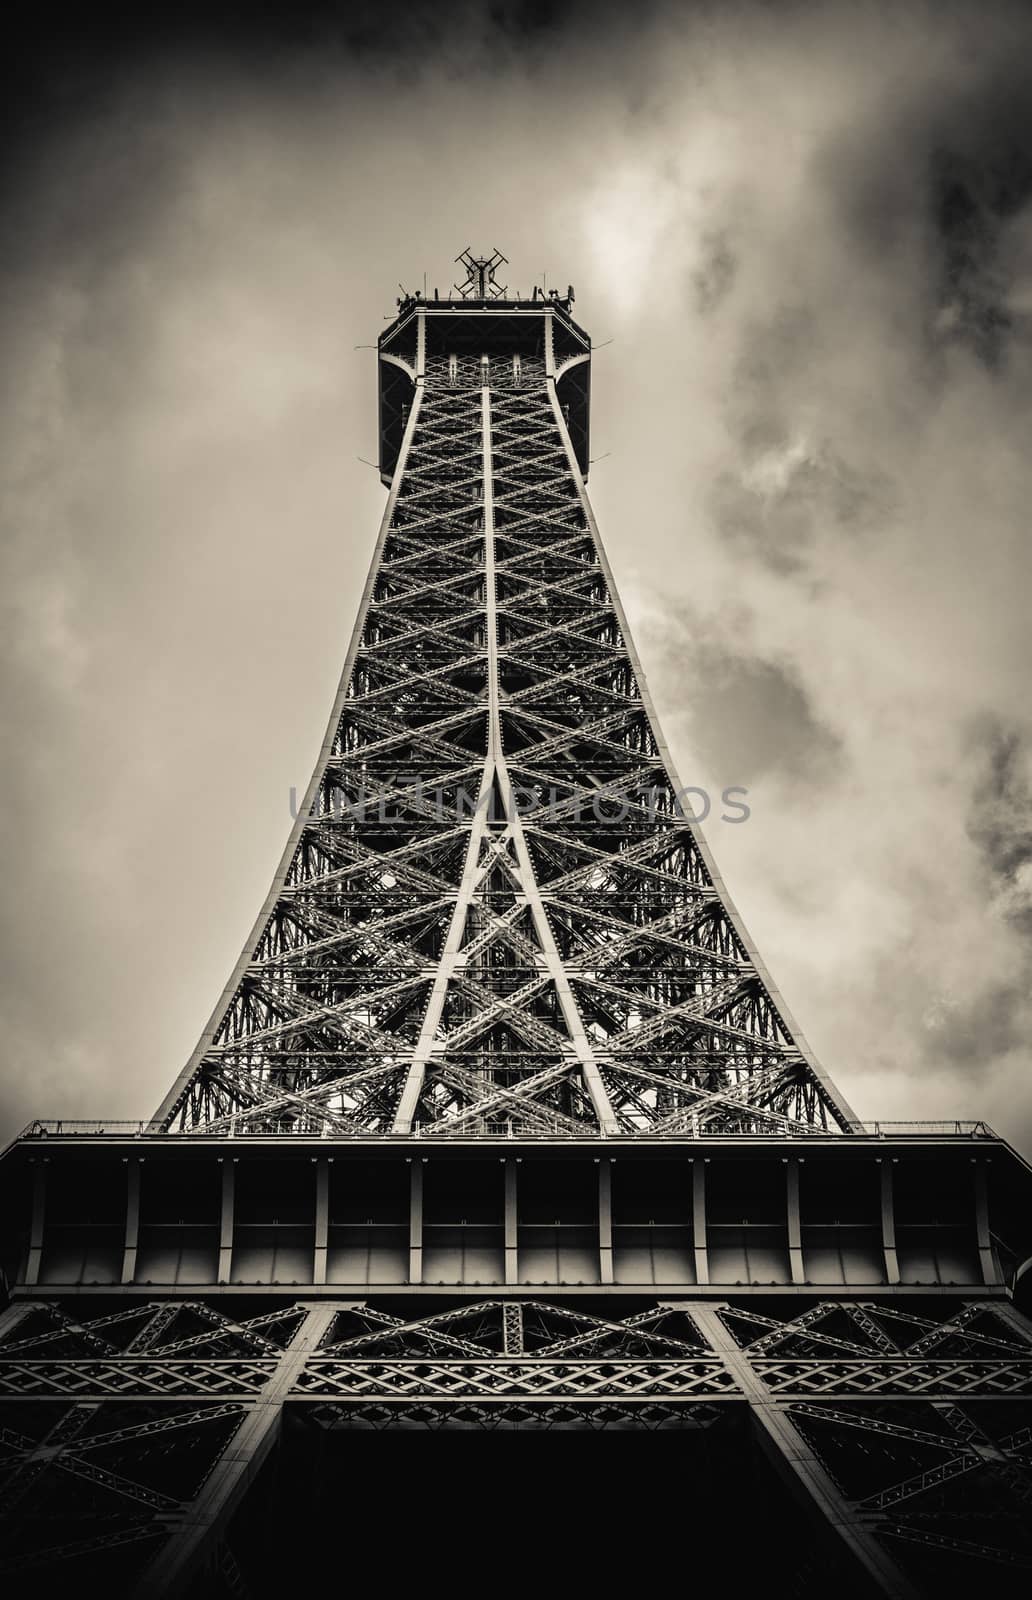 Retro Paris Eiffel Tower With Stormy Sky by mrdoomits